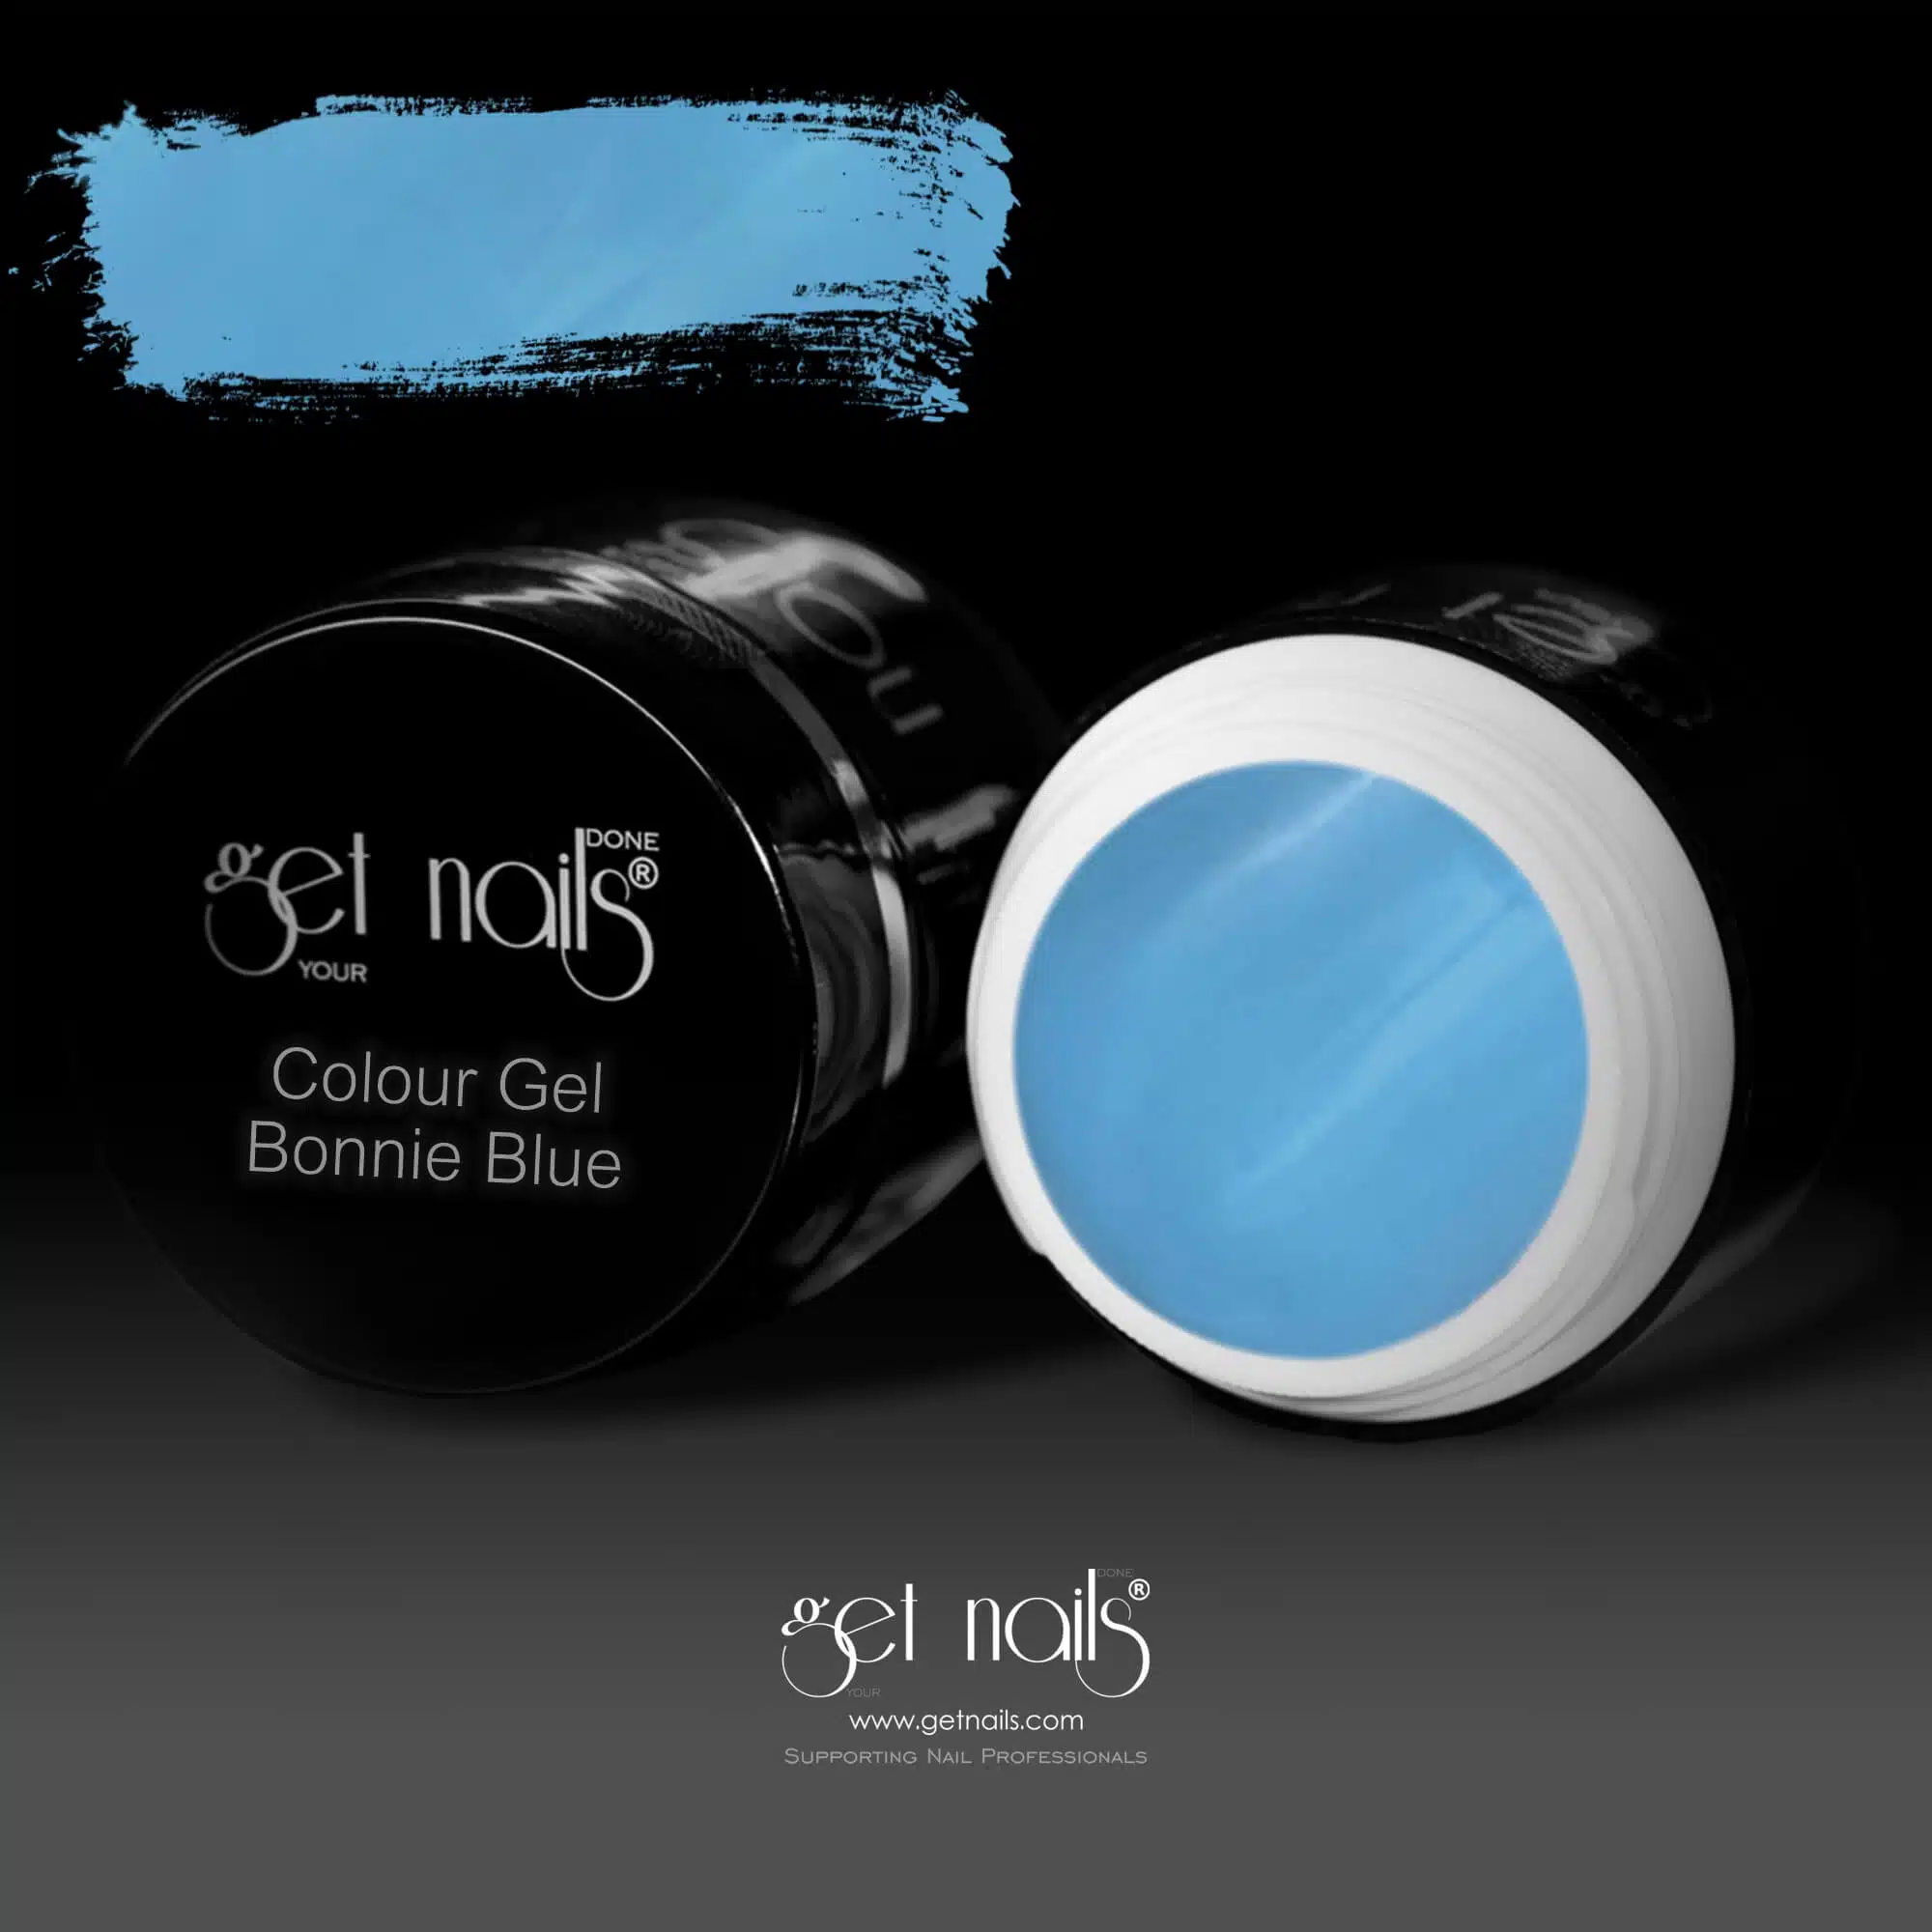 Get Nails Austria - Colour Gel Bonnie Blue 5g